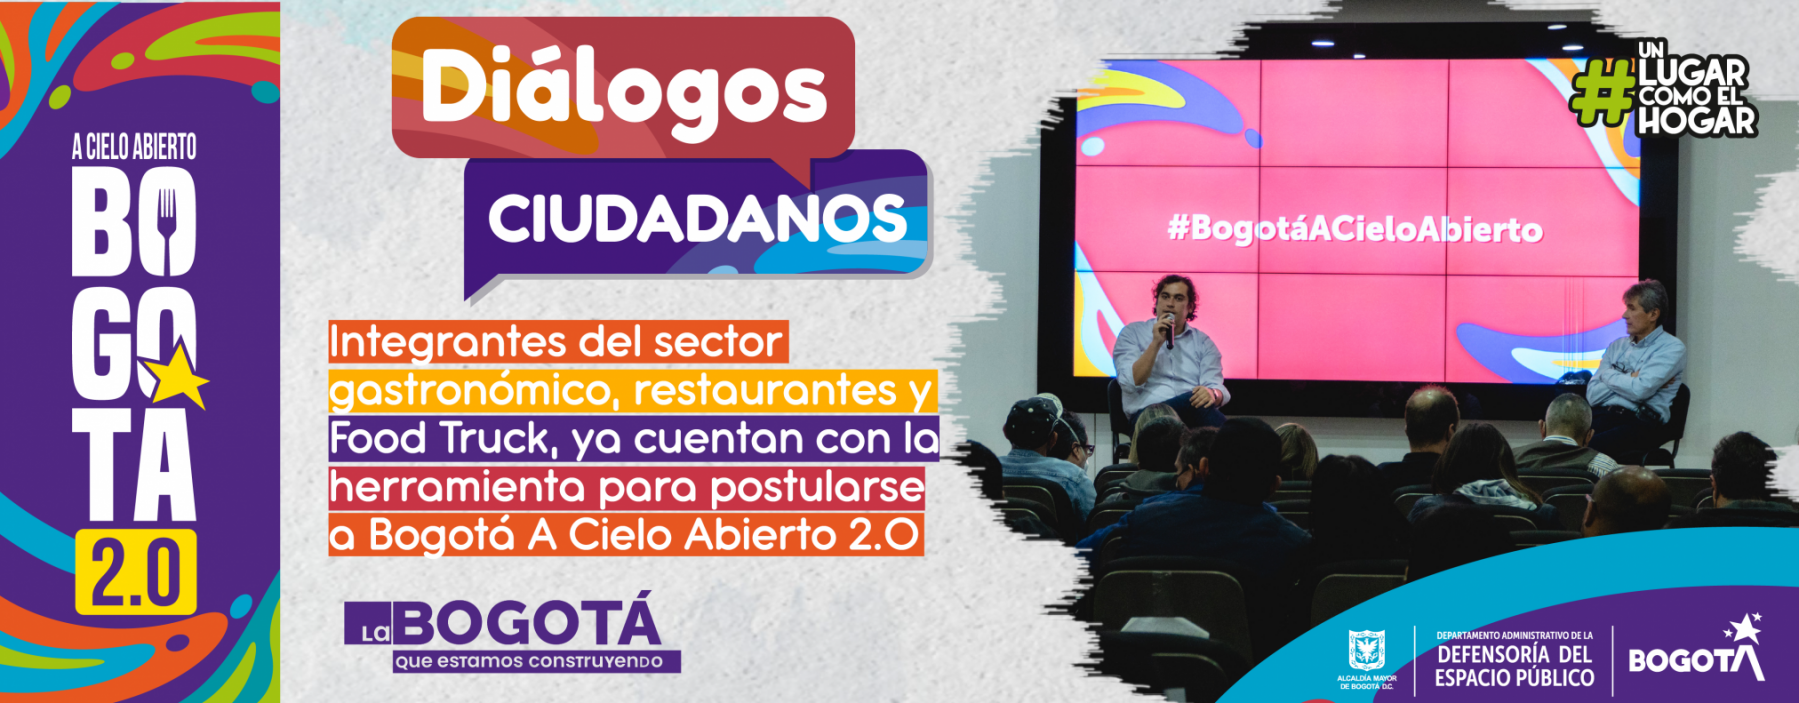 Bogotá A Cielo Abierto 2.0